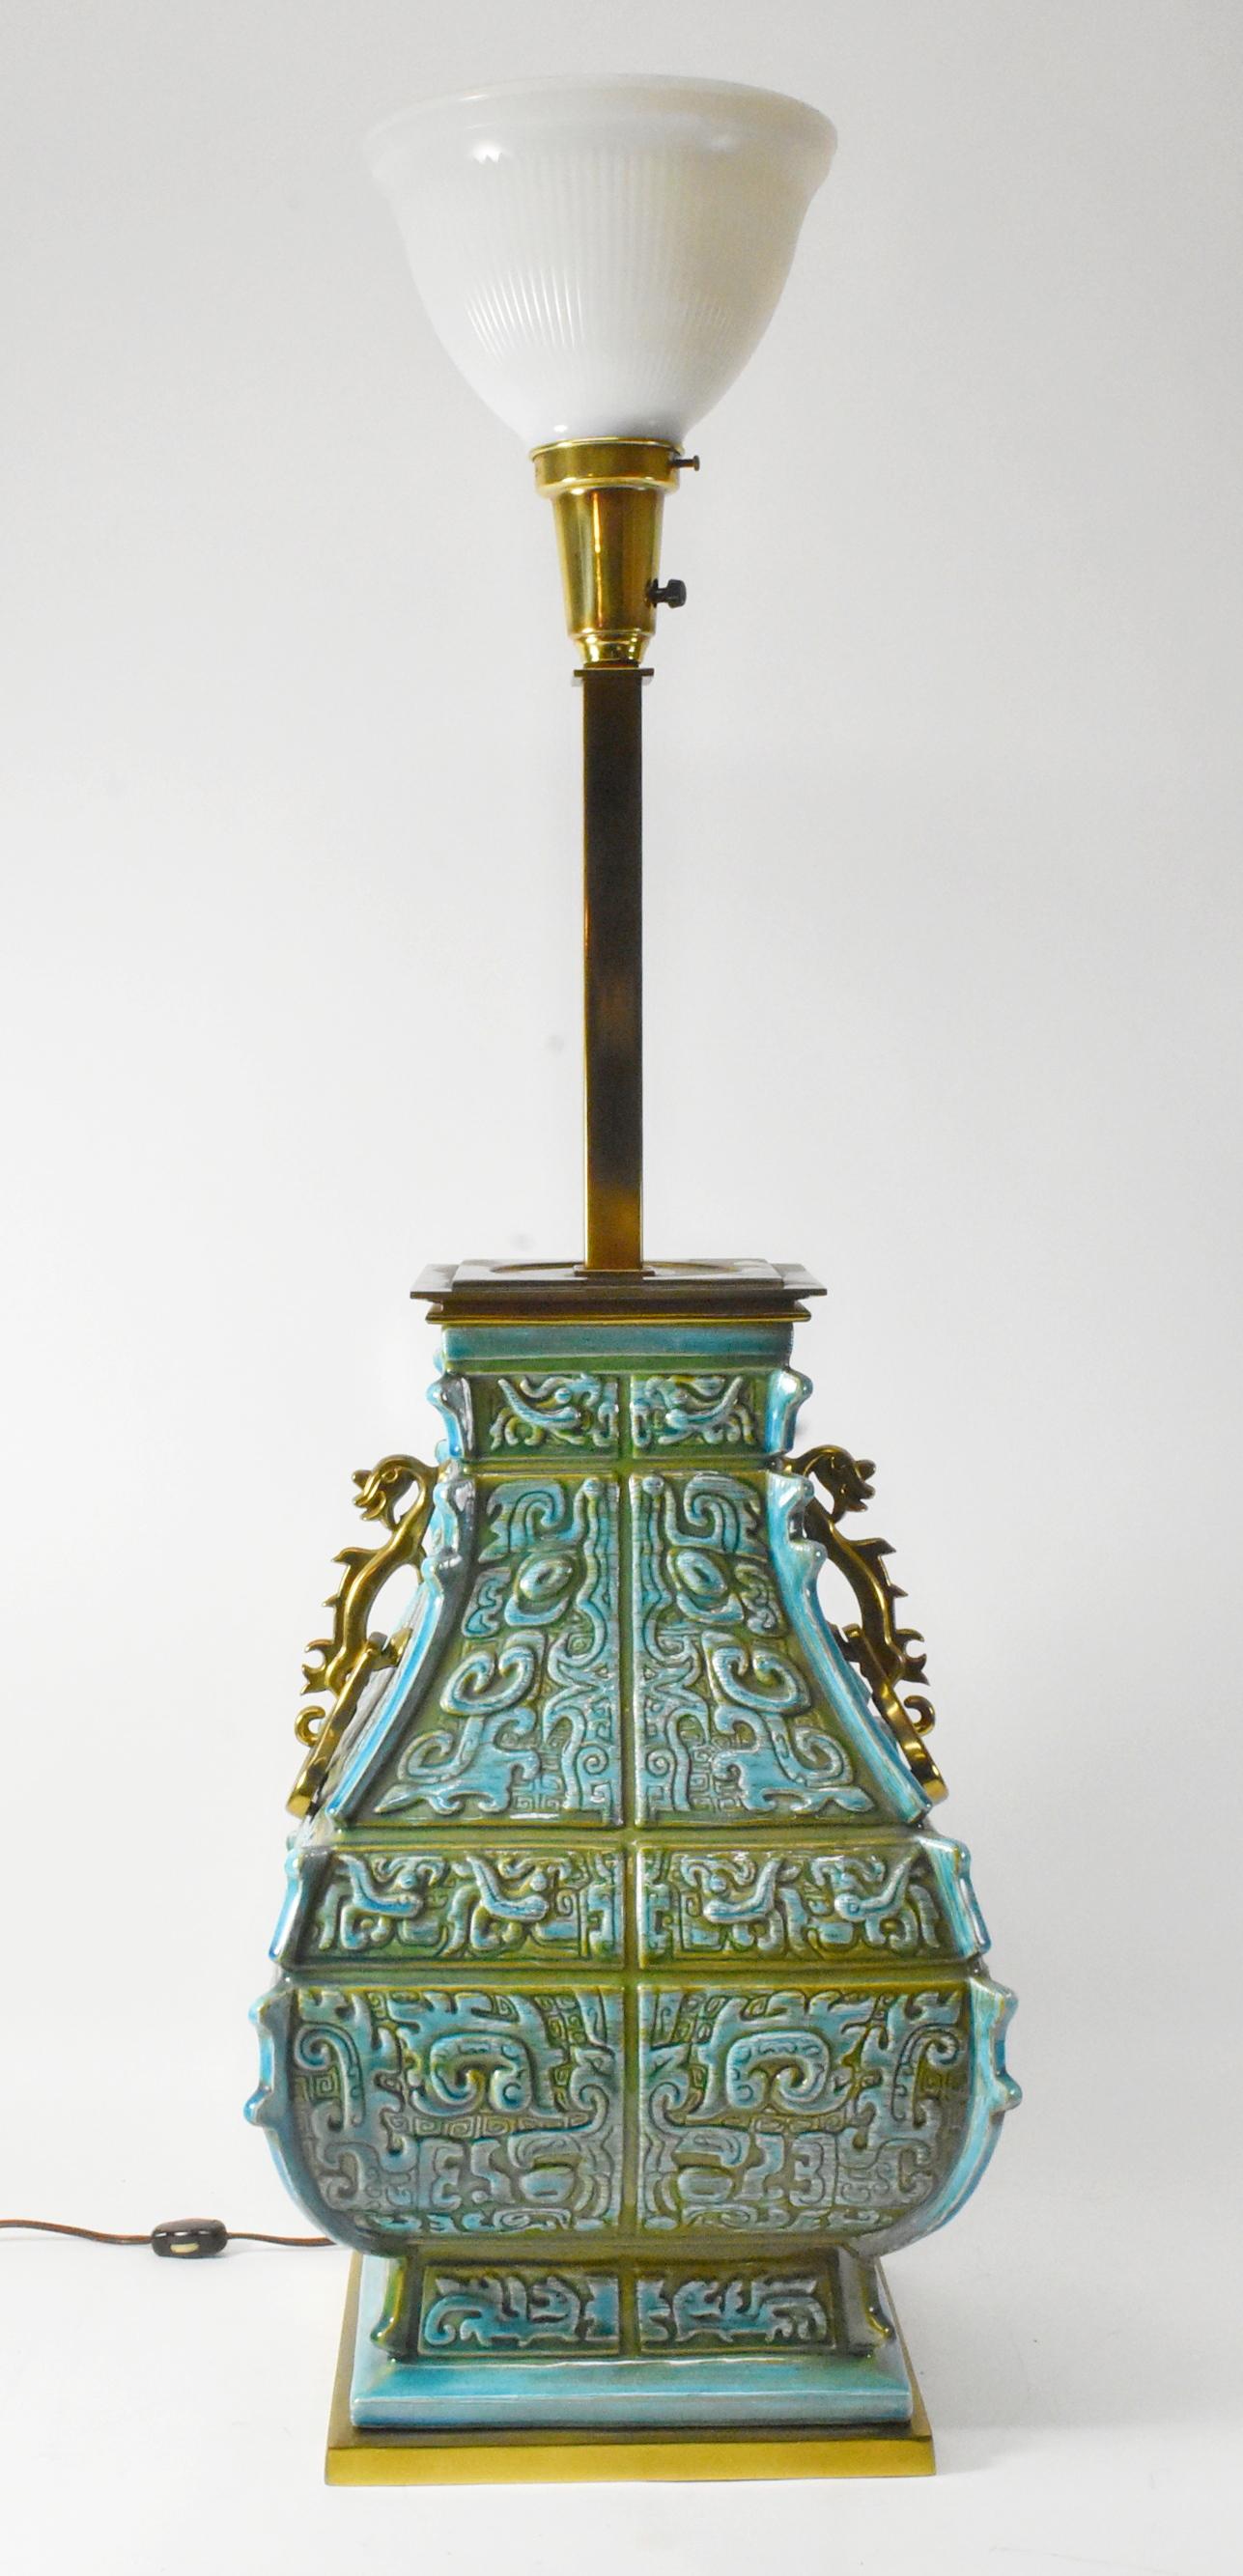 Lampe de table en porcelaine à motif japonais, datant du milieu du siècle dernier, vers les années 1940. Motifs japonais turquoise et vert avec poignées en laiton en forme de dragon. Lampe à une douille avec cordon de couleur marron avec